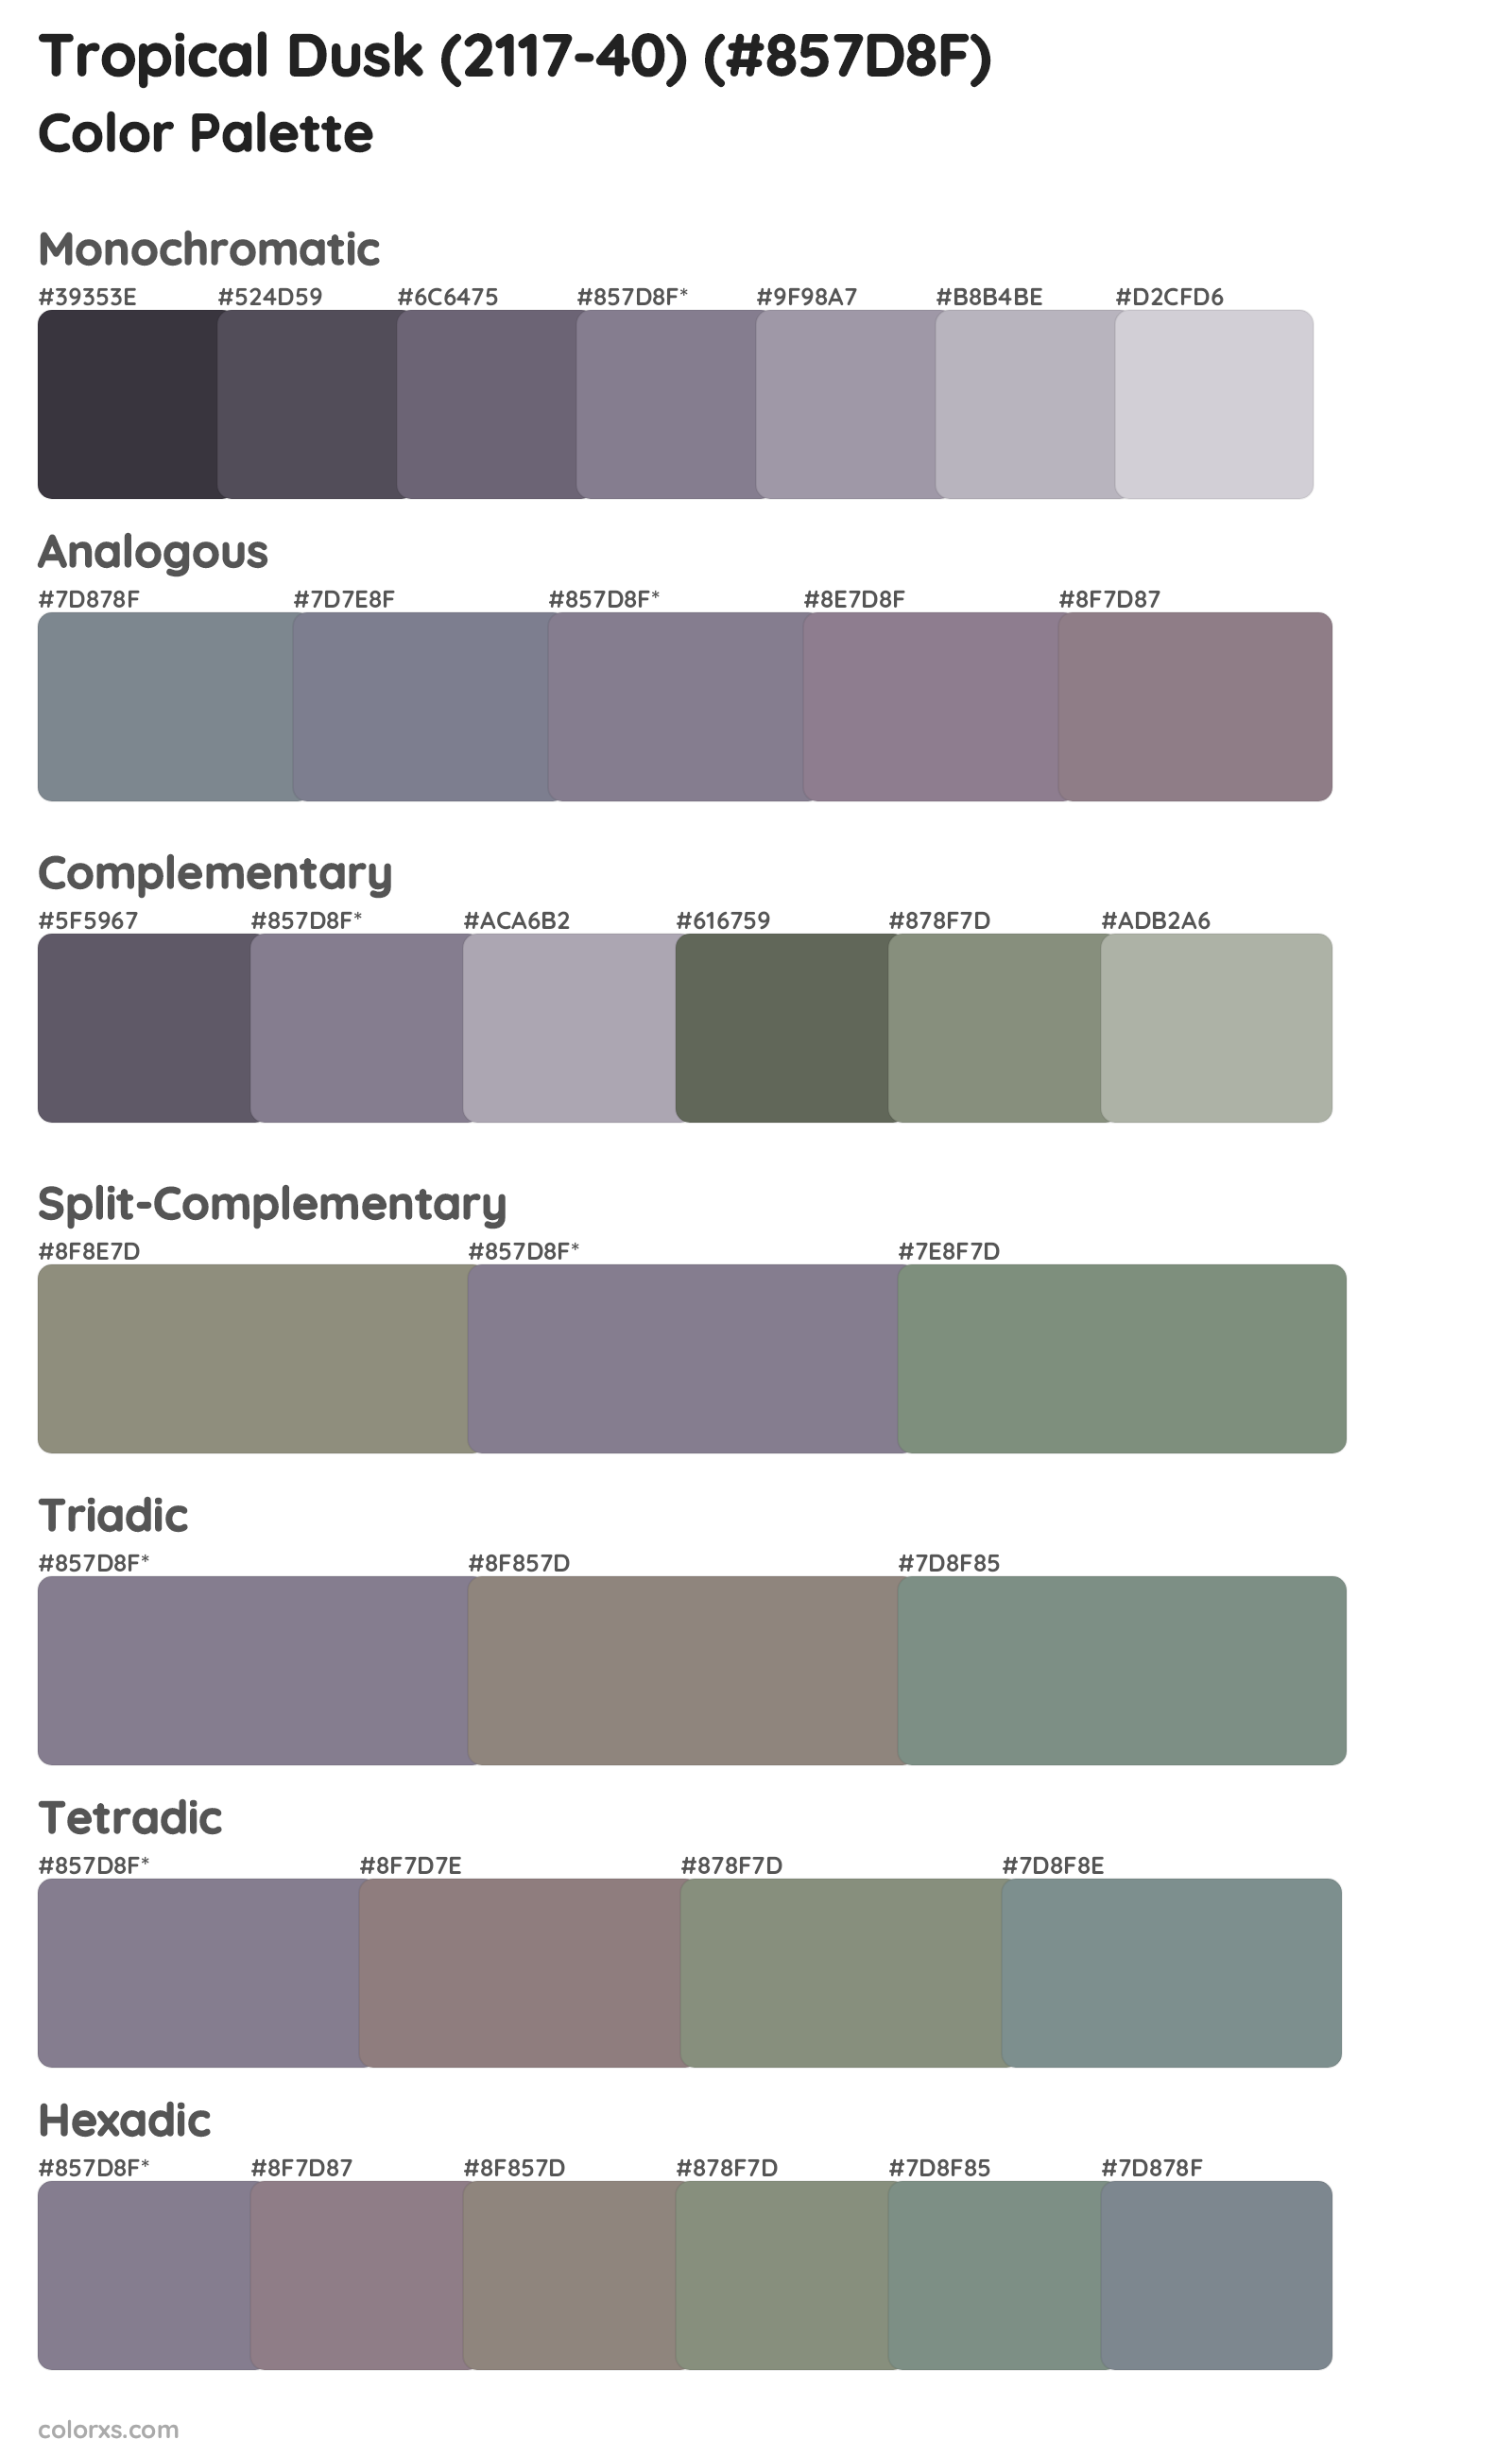 Tropical Dusk (2117-40) Color Scheme Palettes